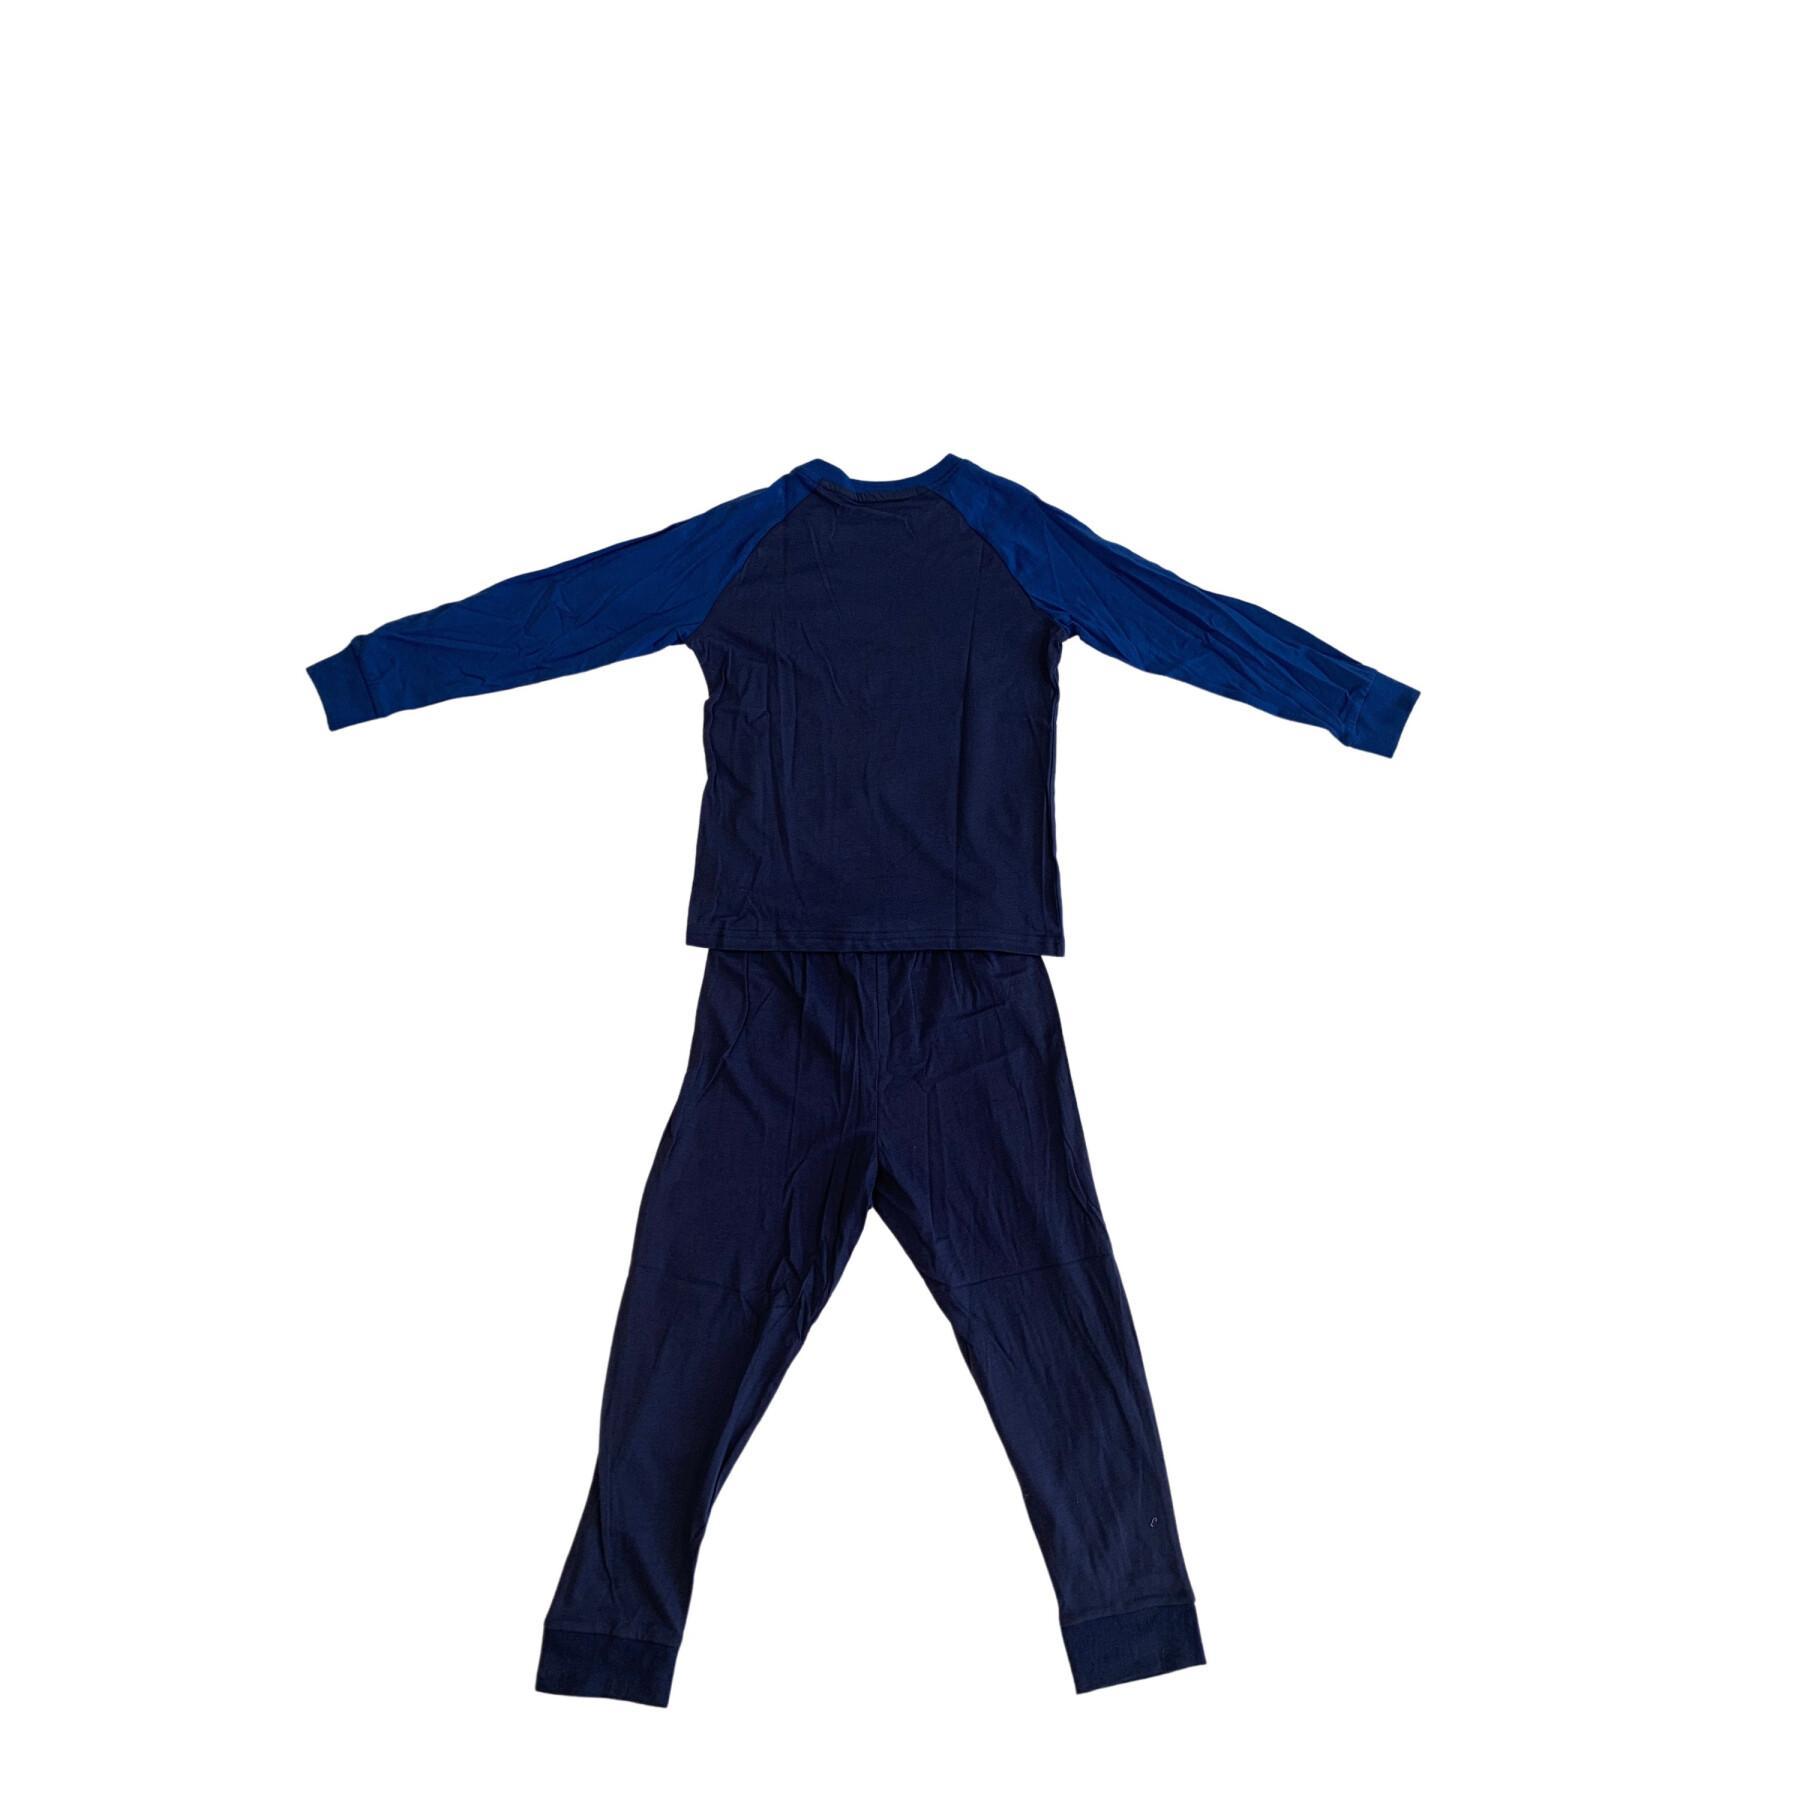 Children's pyjamas France Weeplay joueur cintré